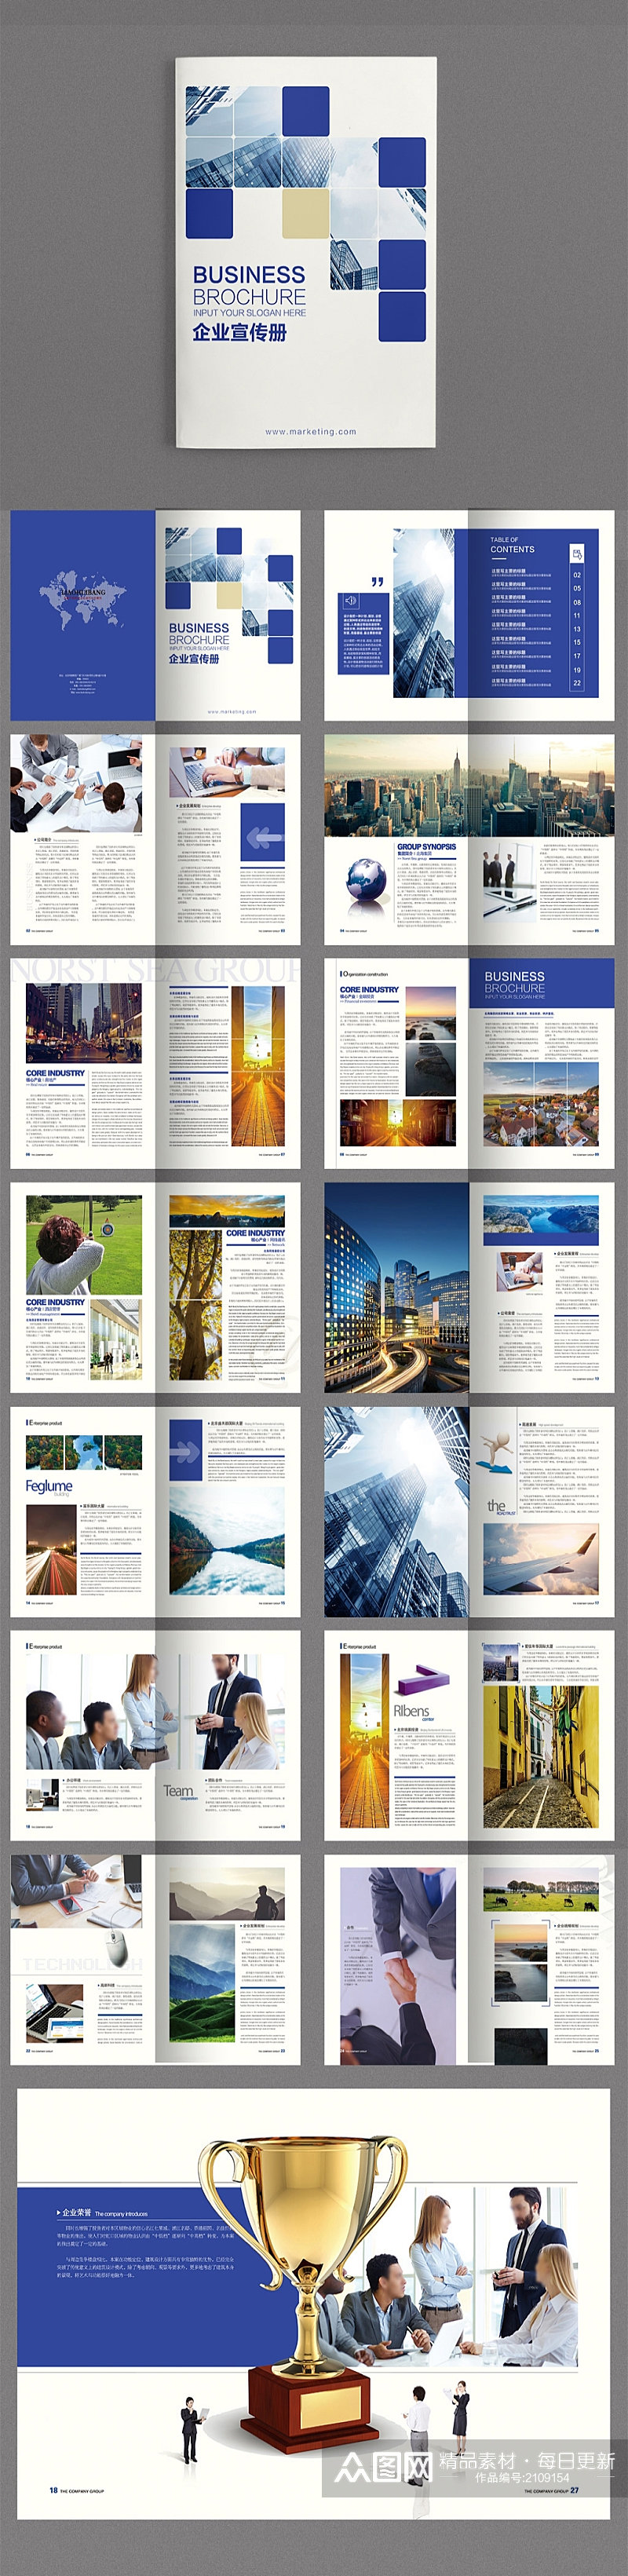 蓝色高端大气科技企业宣传画册设计素材